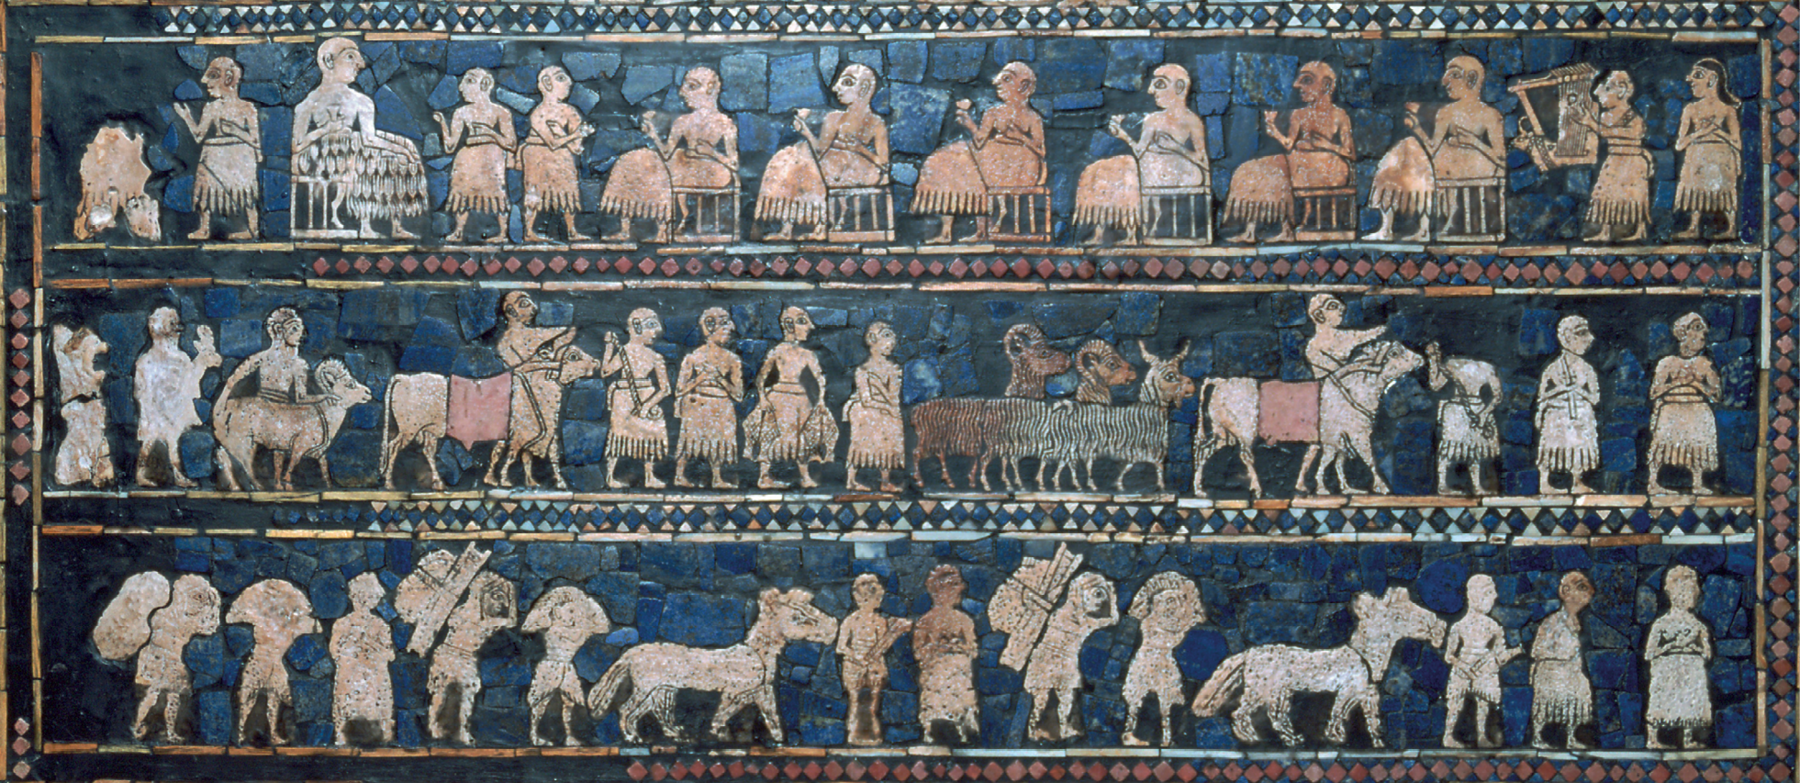 Mosaico. Imagem de mosaico com fundo azul, dividido em três linhas horizontais separadas. De cima para baixo, nesta ordem: linha 1. homens sentados em cadeiras, segurado copos, à esquerda, homens em pé parecem servi-los, à direita um homem segurando um instrumento musical; linha 2. homens em pé acompanhando rebanhos de bovinos, ovelhas e cabras; linha 3. homens em pé, segurando cestas nas costas, ao lado de burros e cavalos.